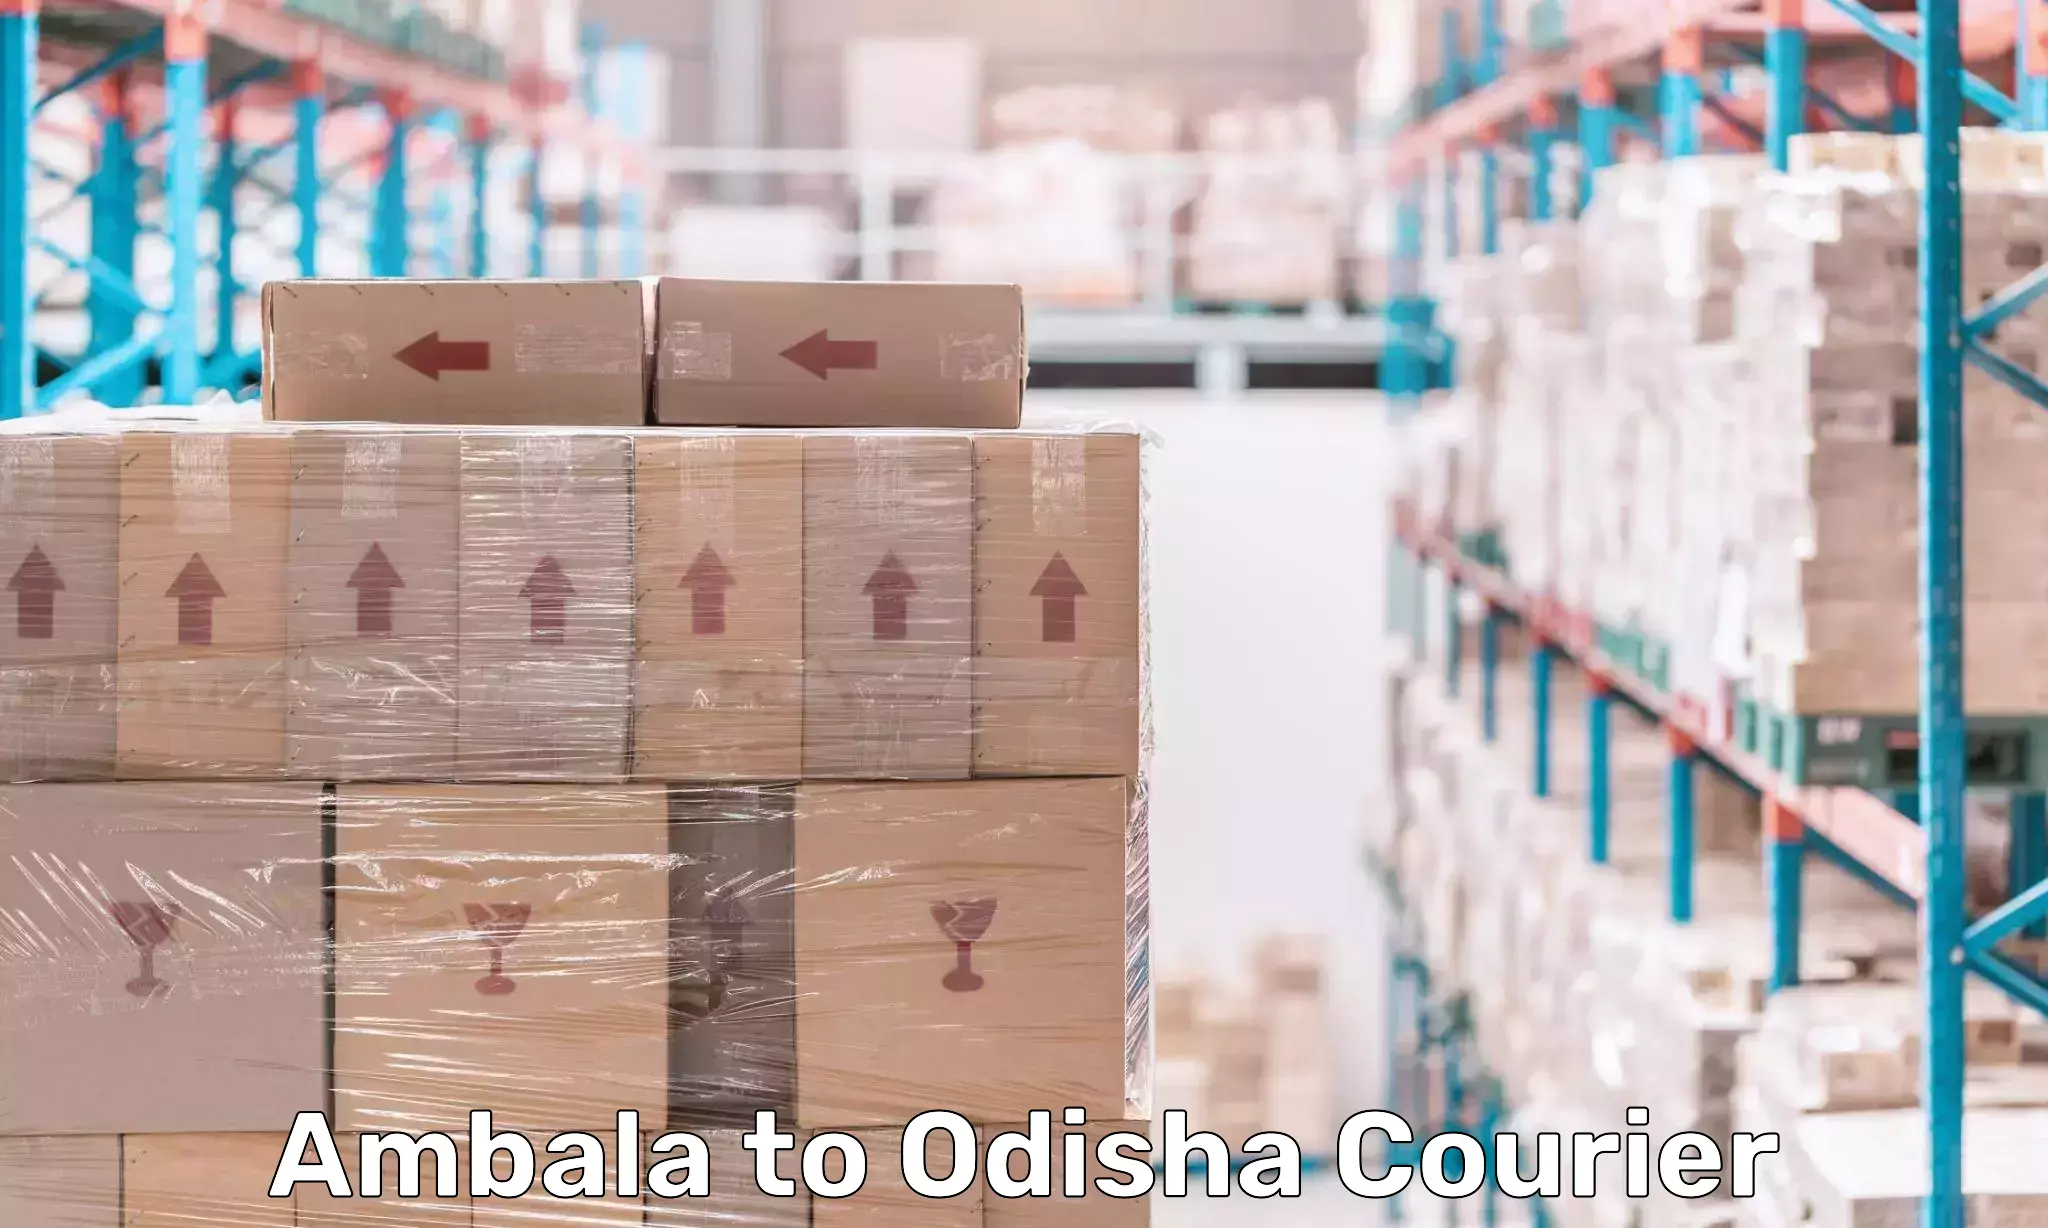 Global courier networks Ambala to Melchhamunda